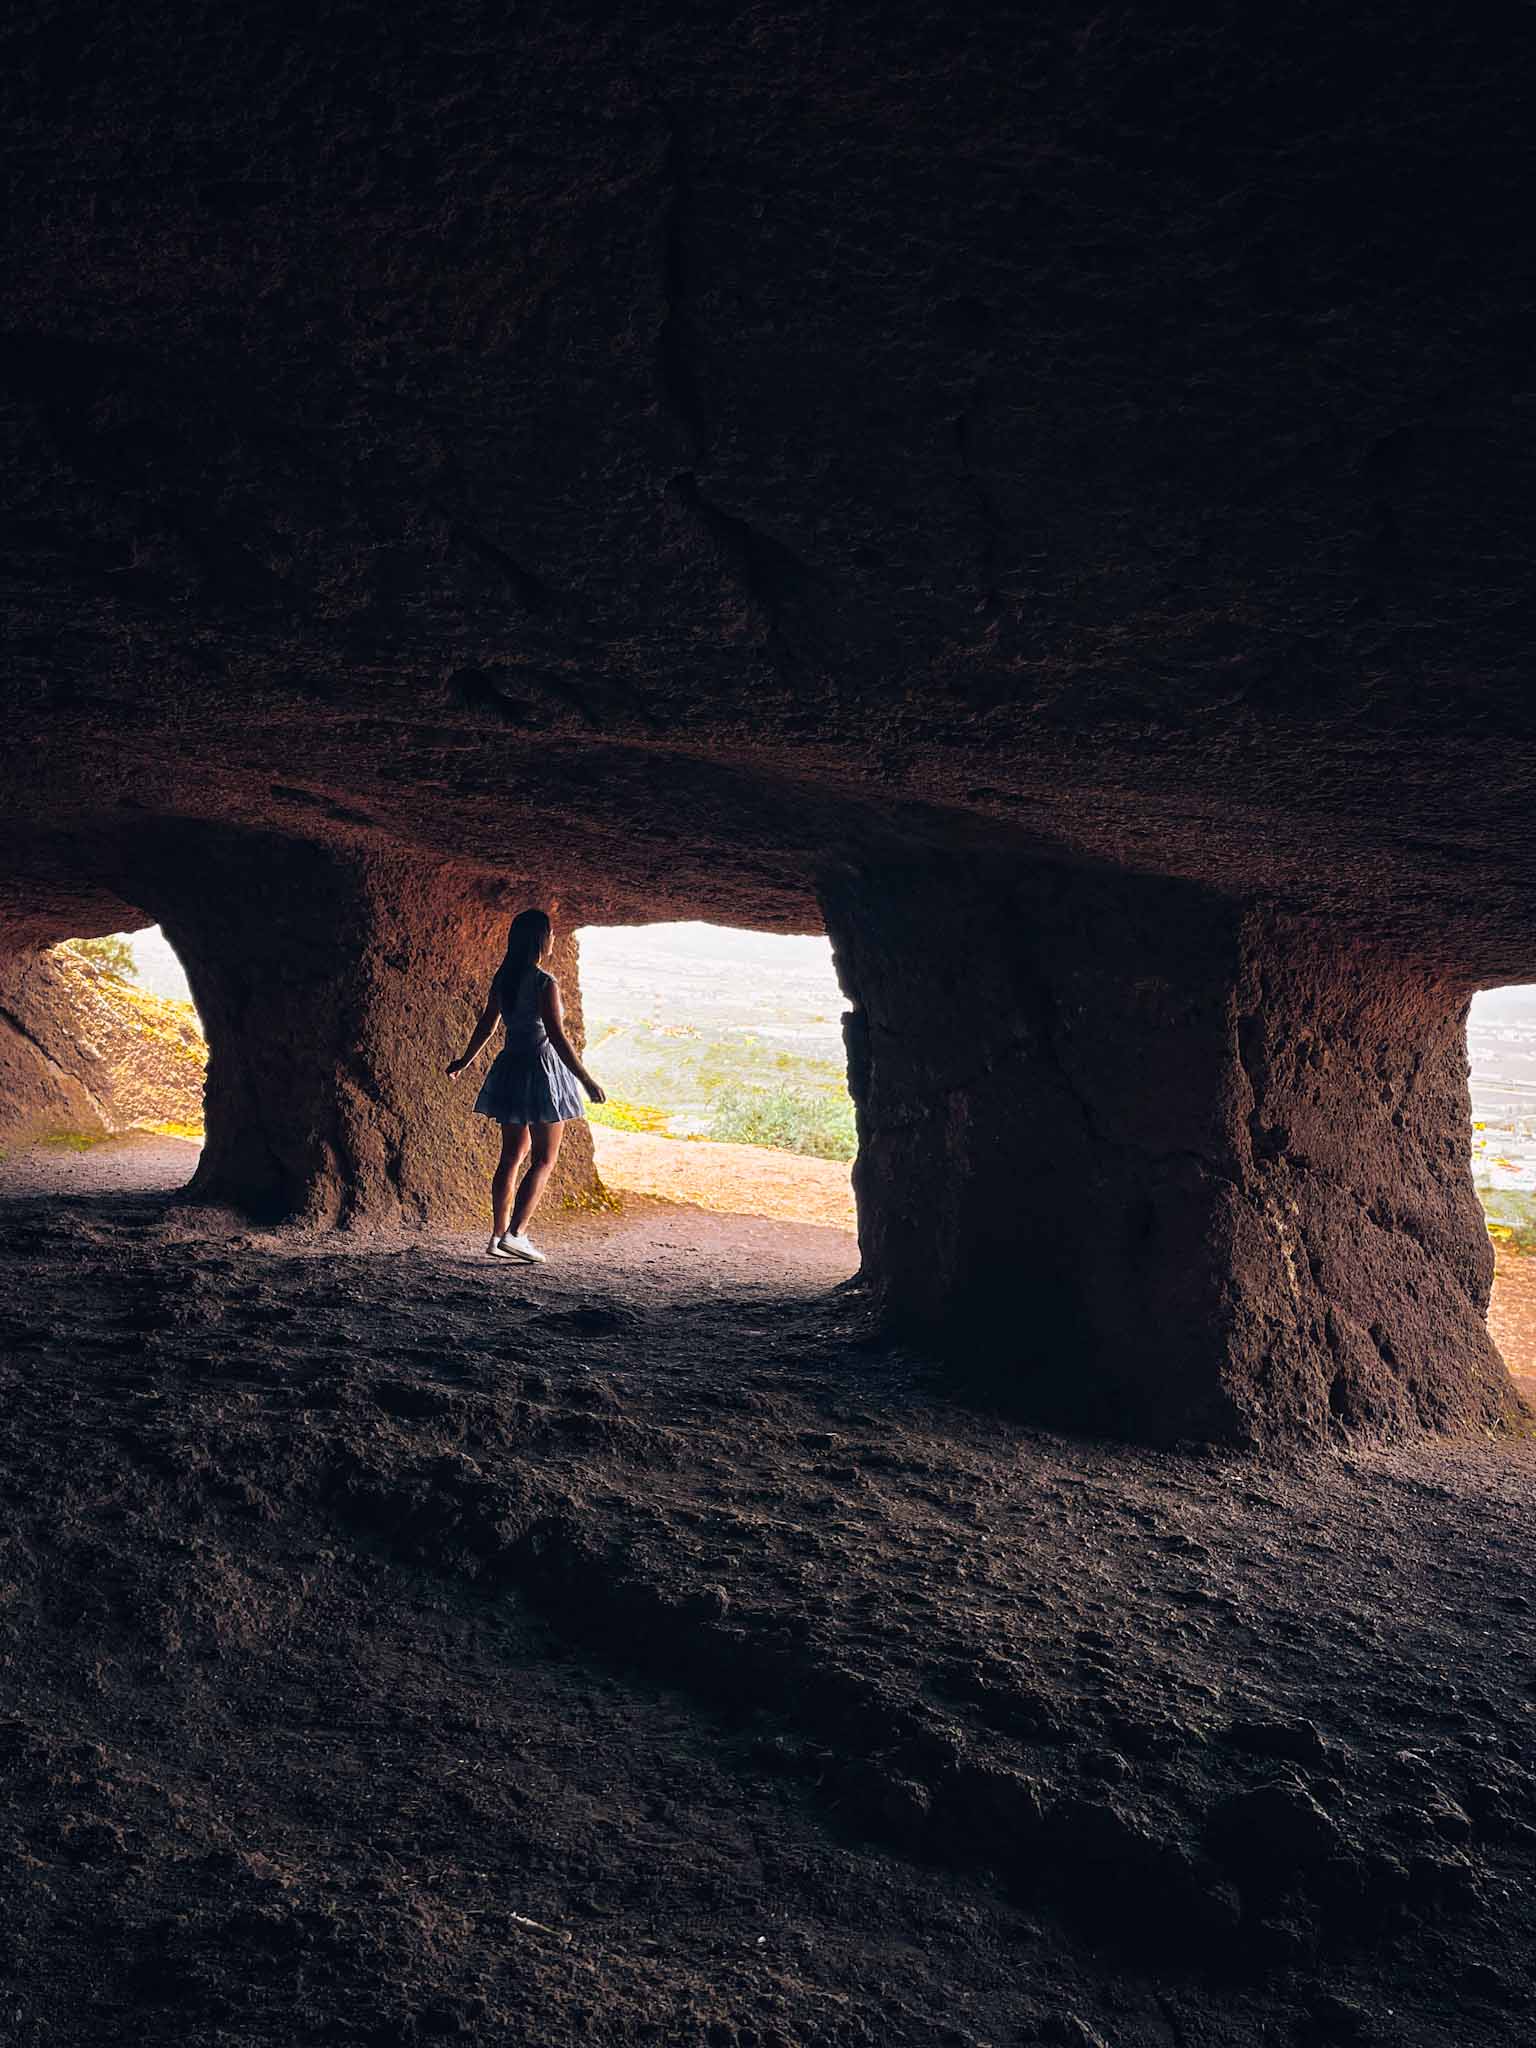 Cuevas de Cuatro Puertas in Gran Canaria